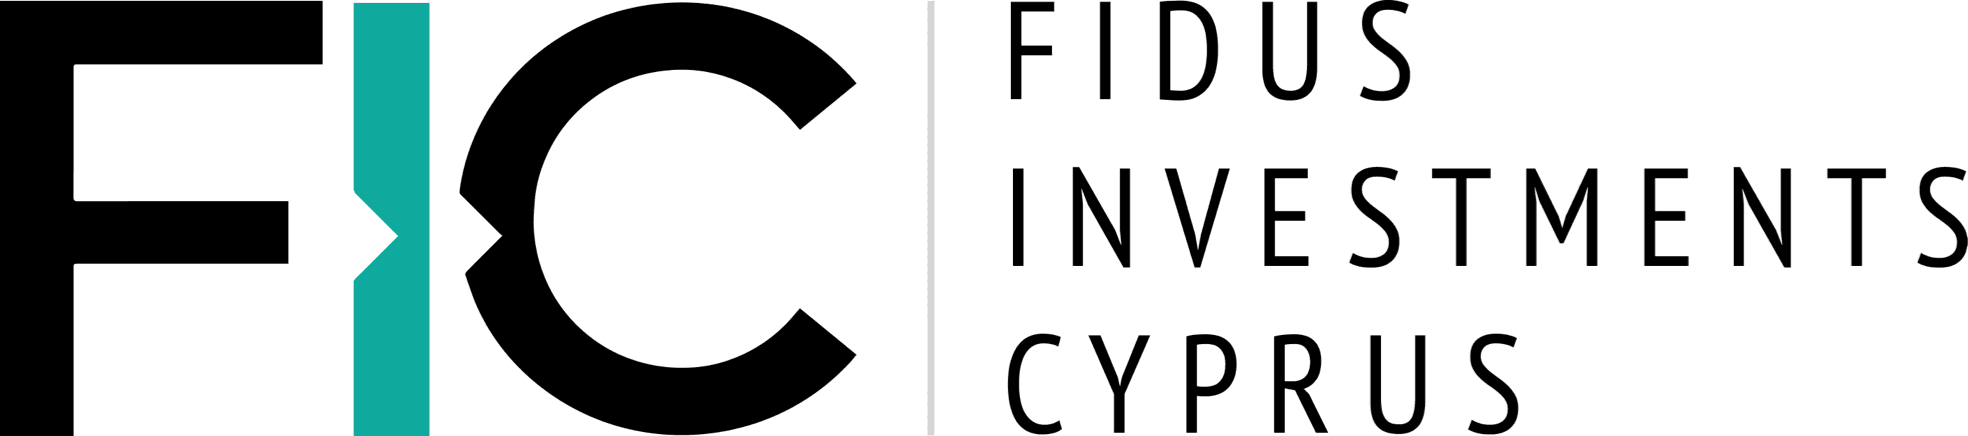 Fidus Investments